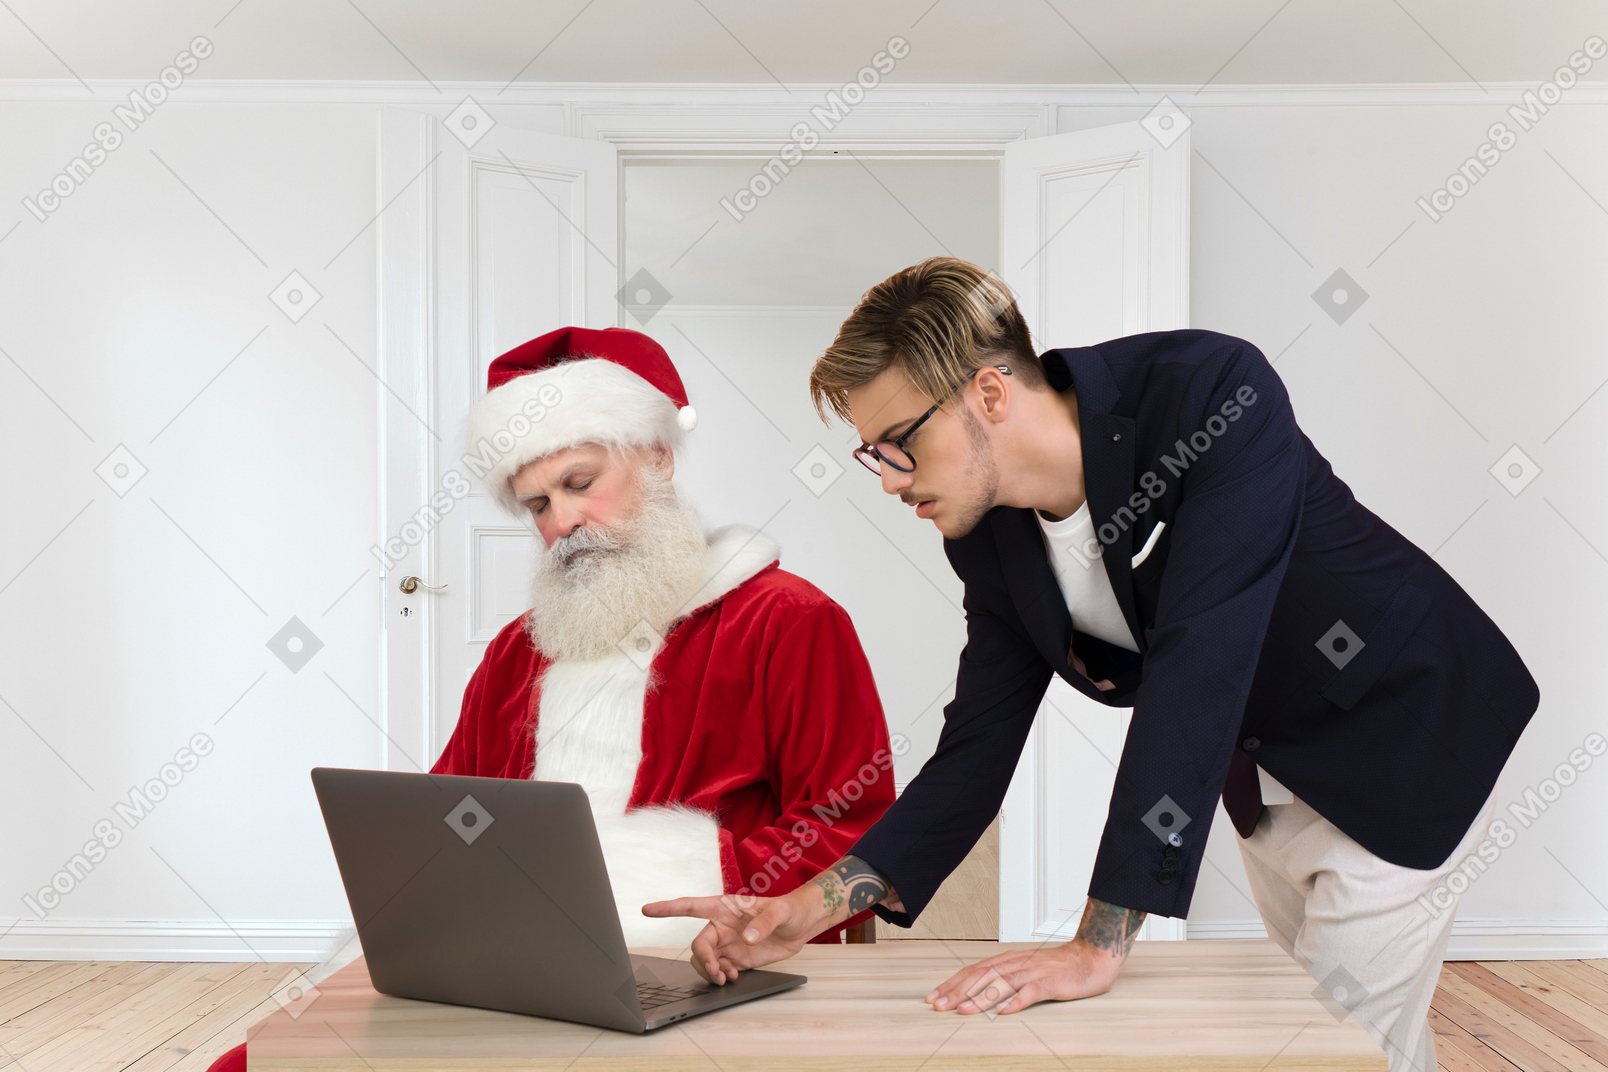 Santa döst, während ein junger mann einige informationen auf einem computer überprüft